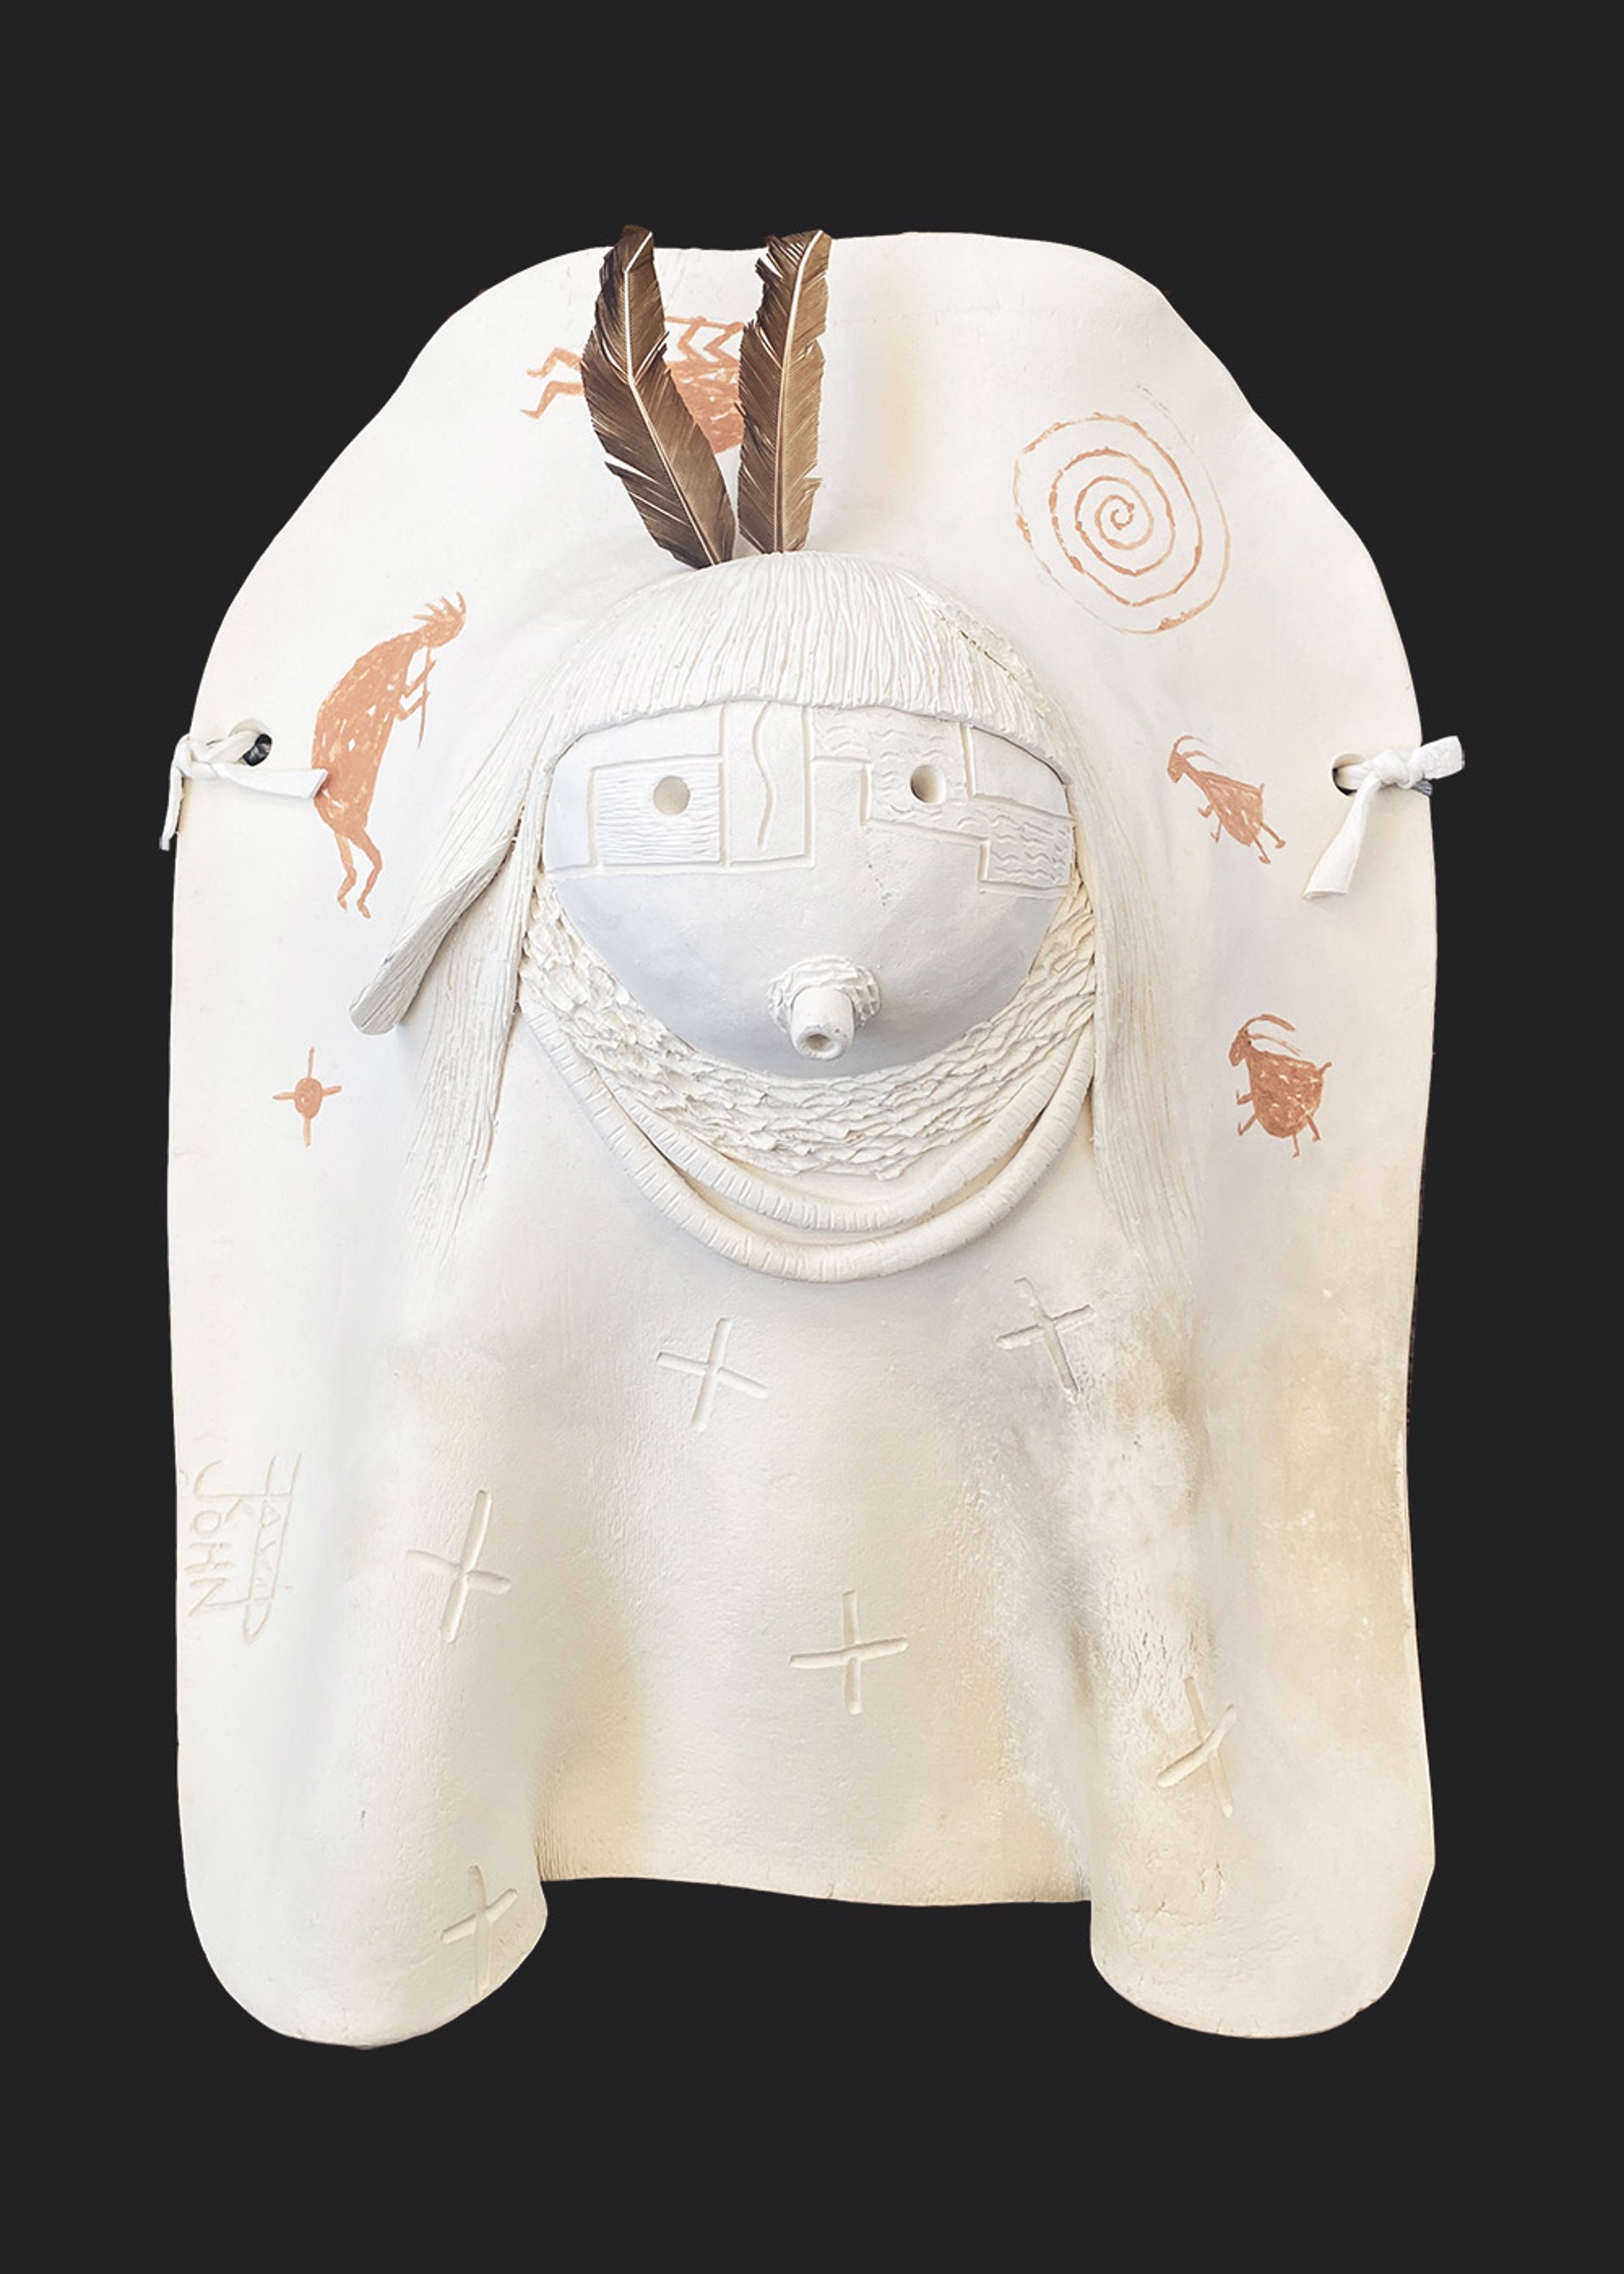 Navajo Yei Clay Pottery Mask by David K John